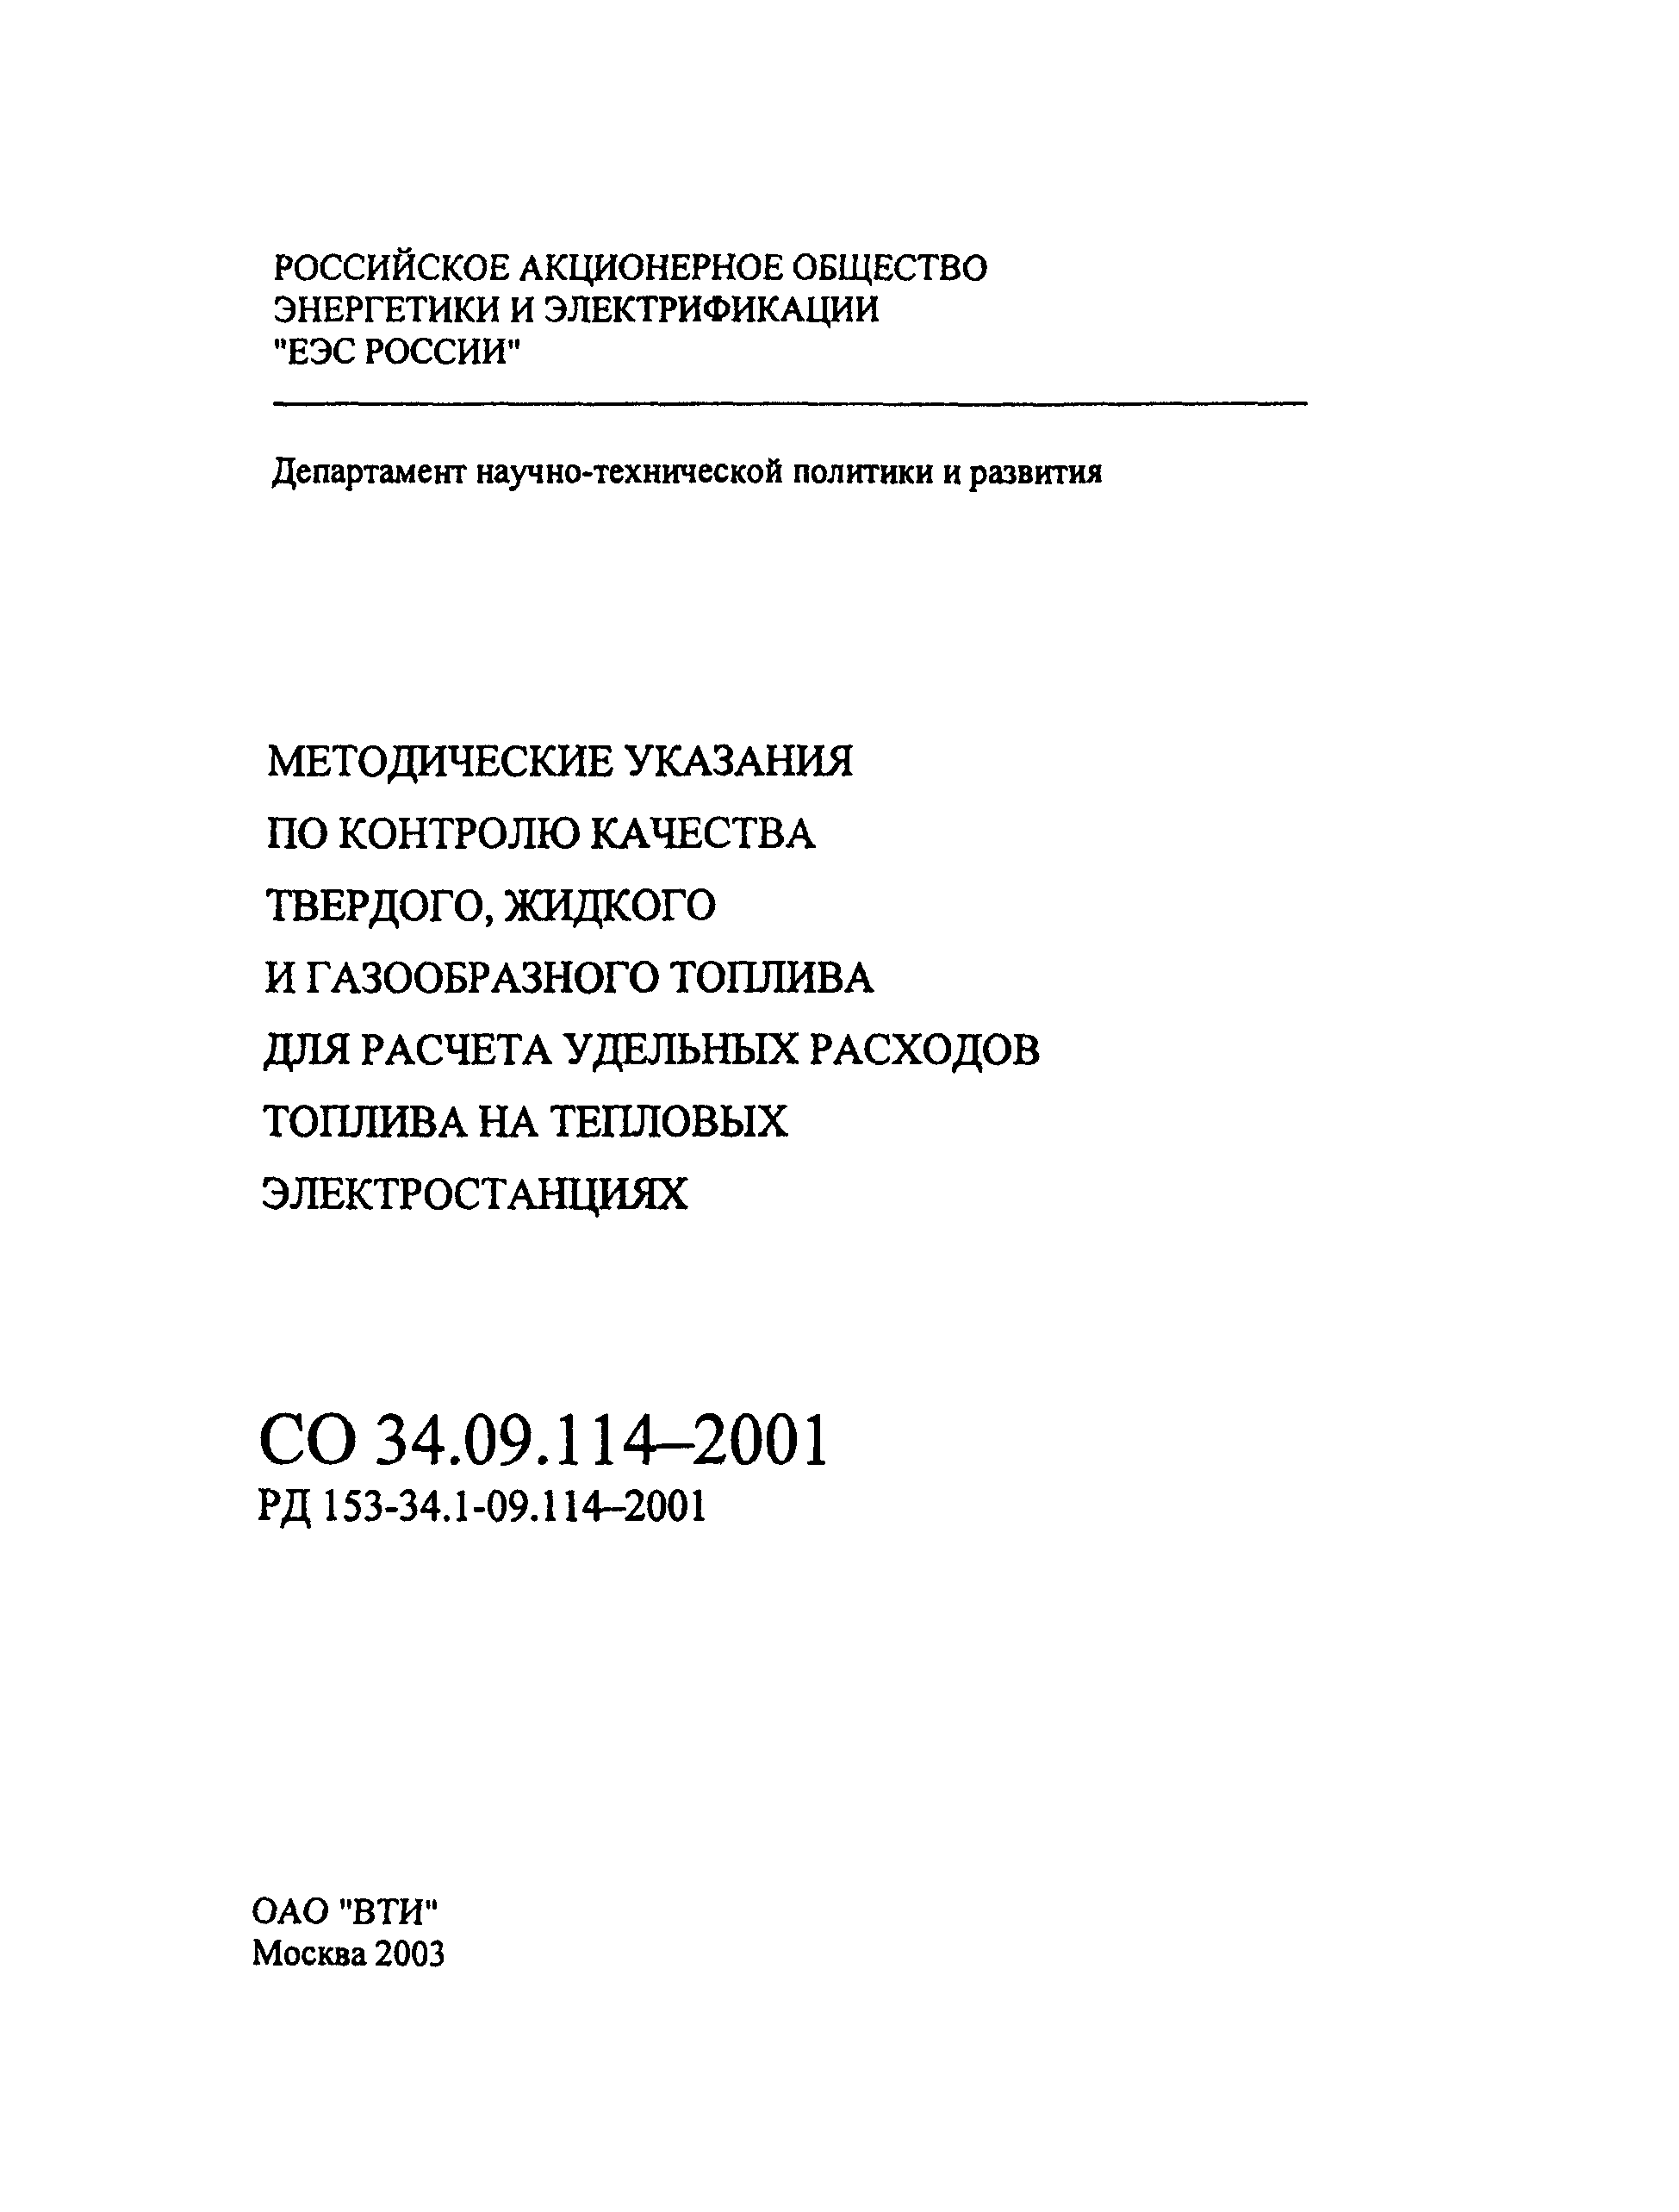 СО 34.09.114-2001